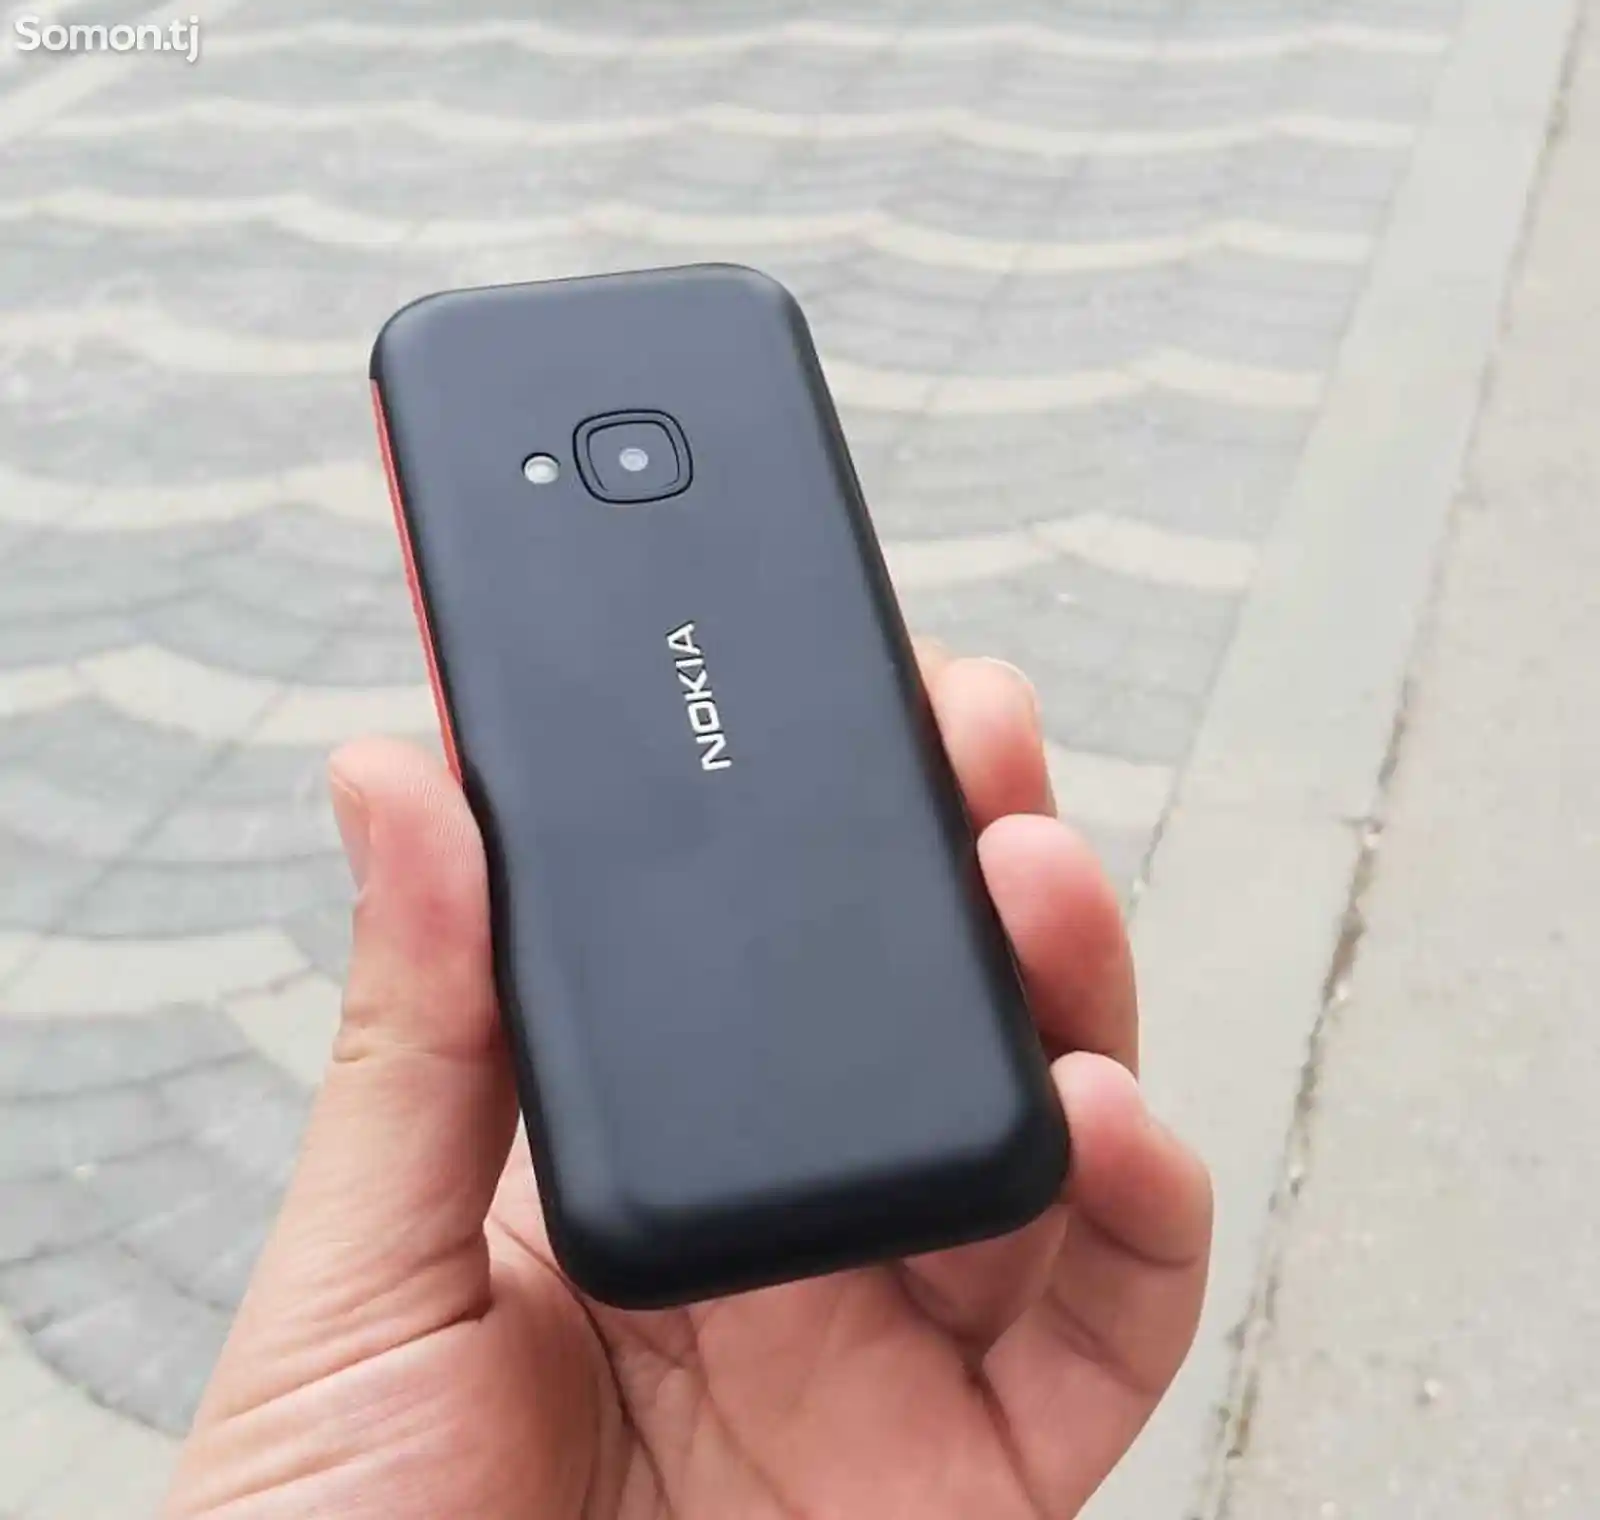 Nokia 5310 Vietnam-3